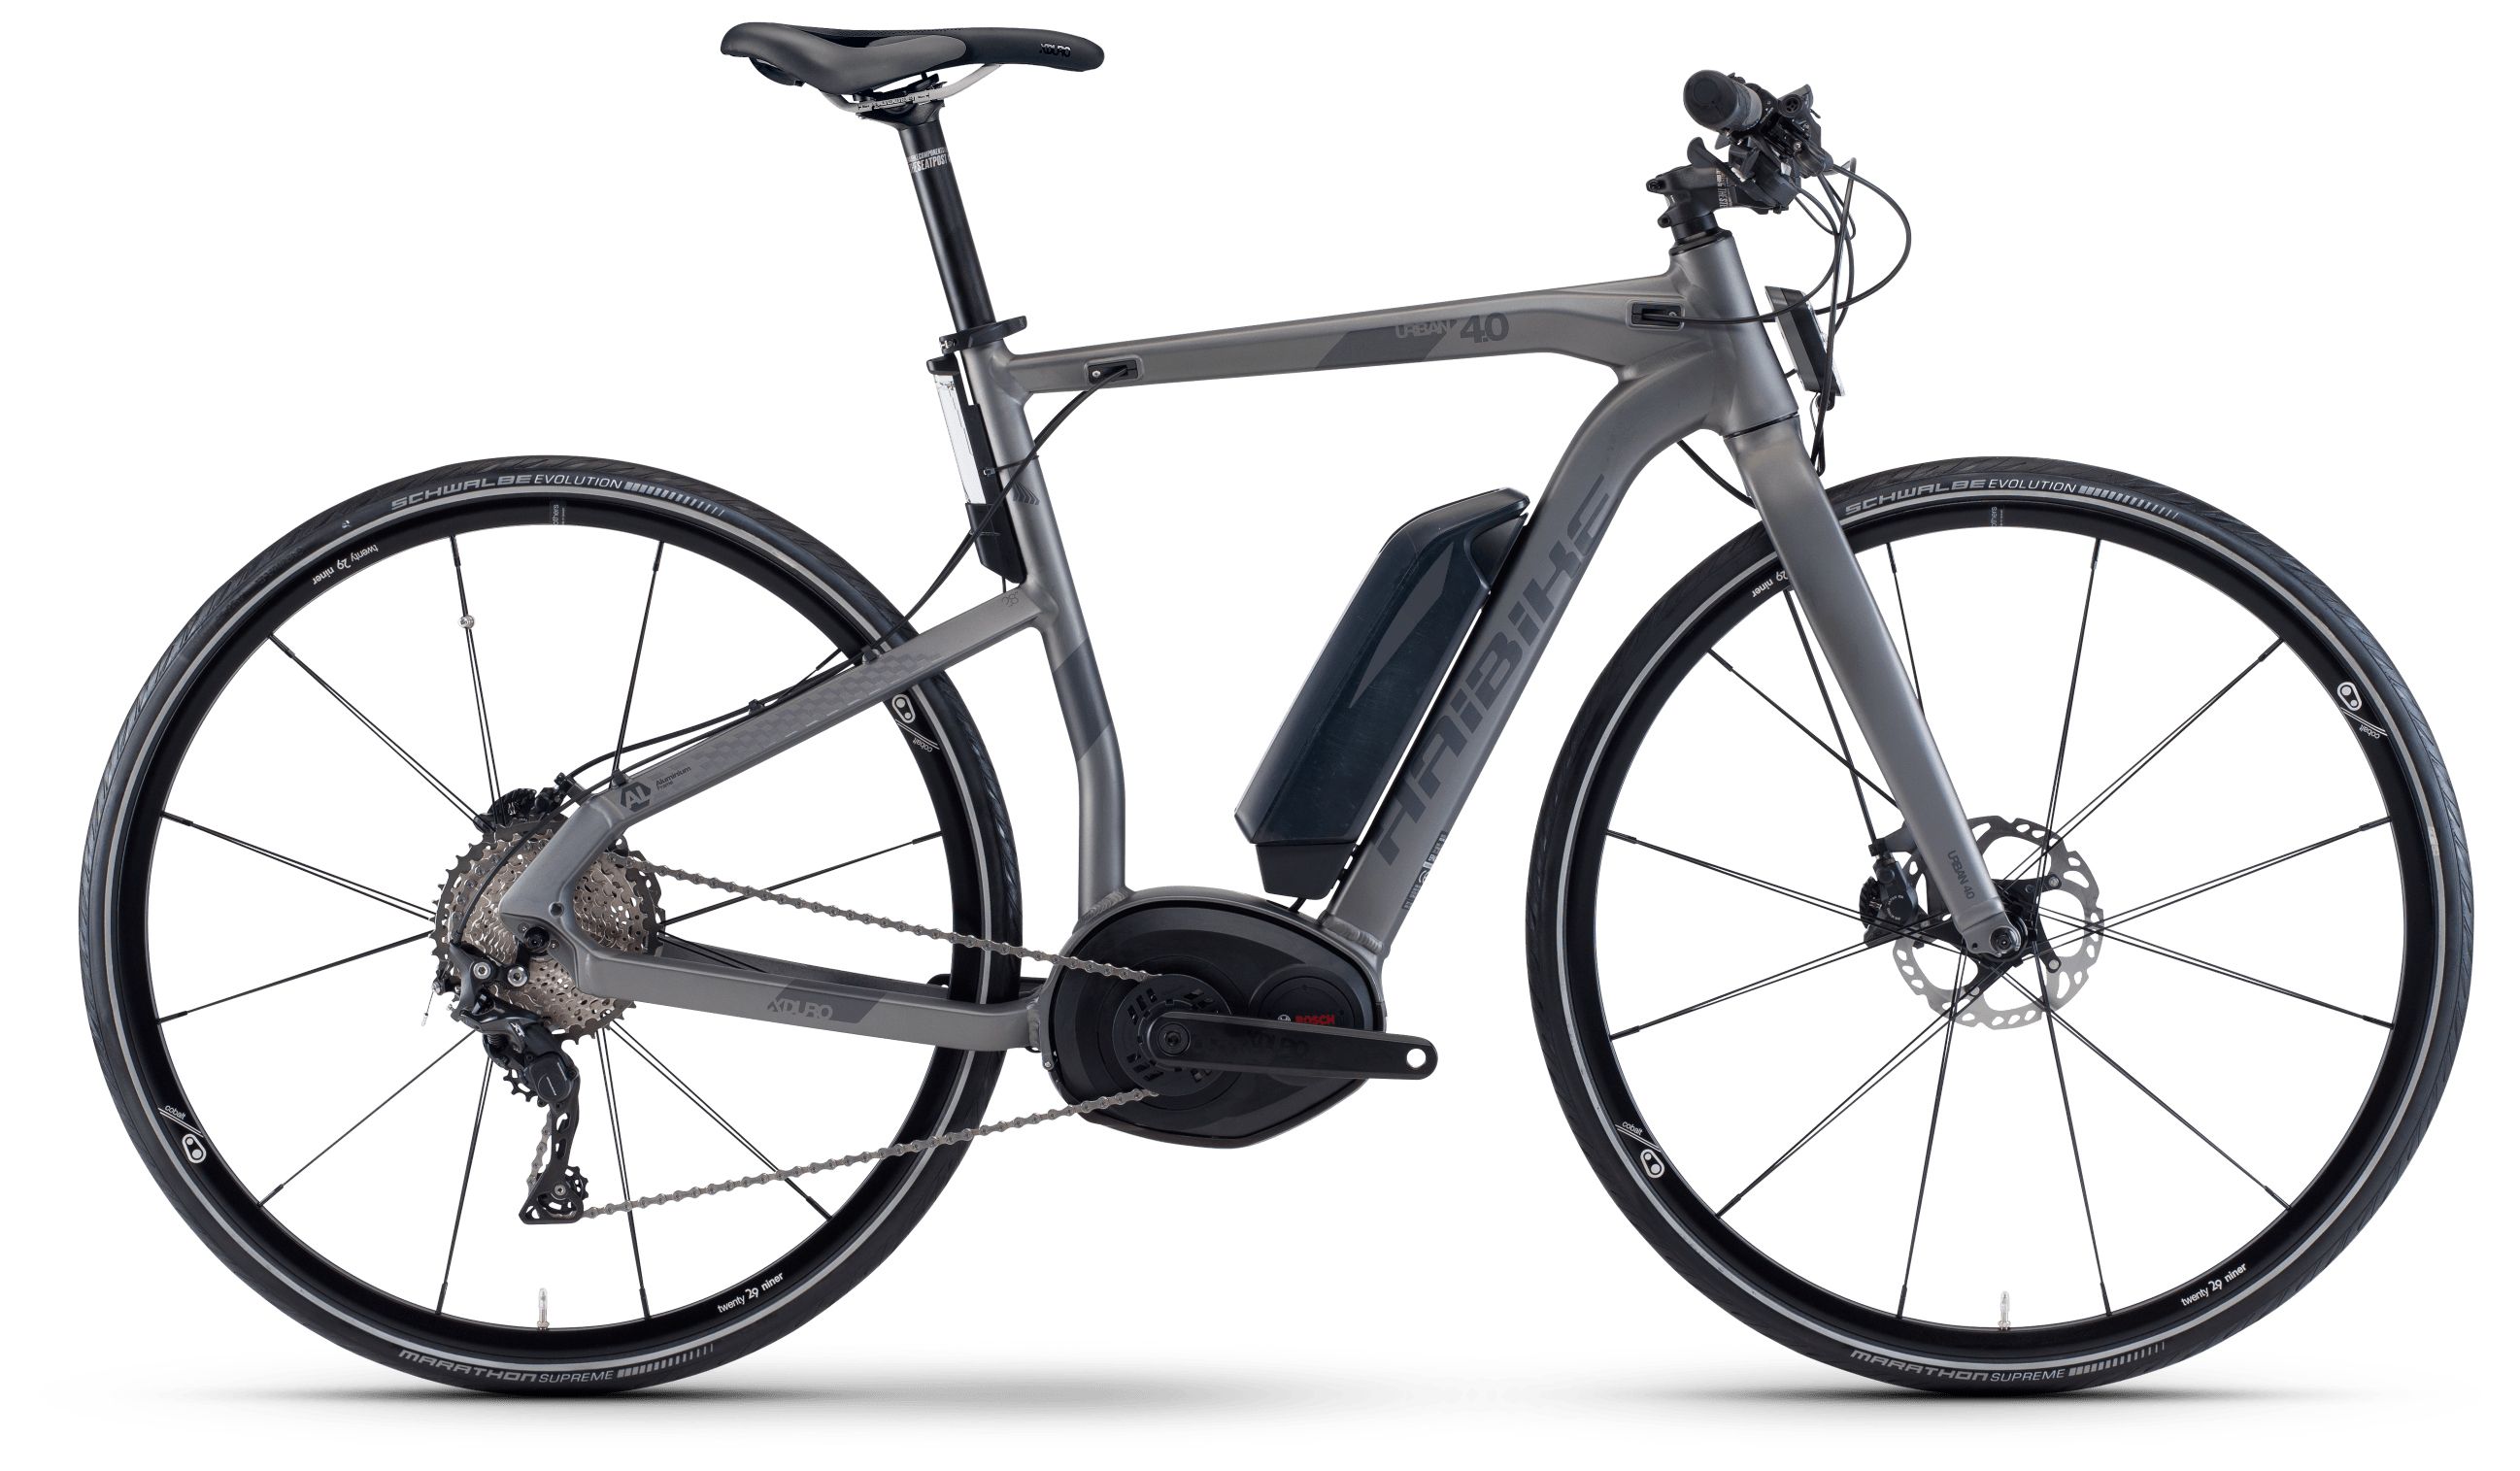  Велосипед Haibike Xduro Urban 4.0 500Wh 11s XT 2018